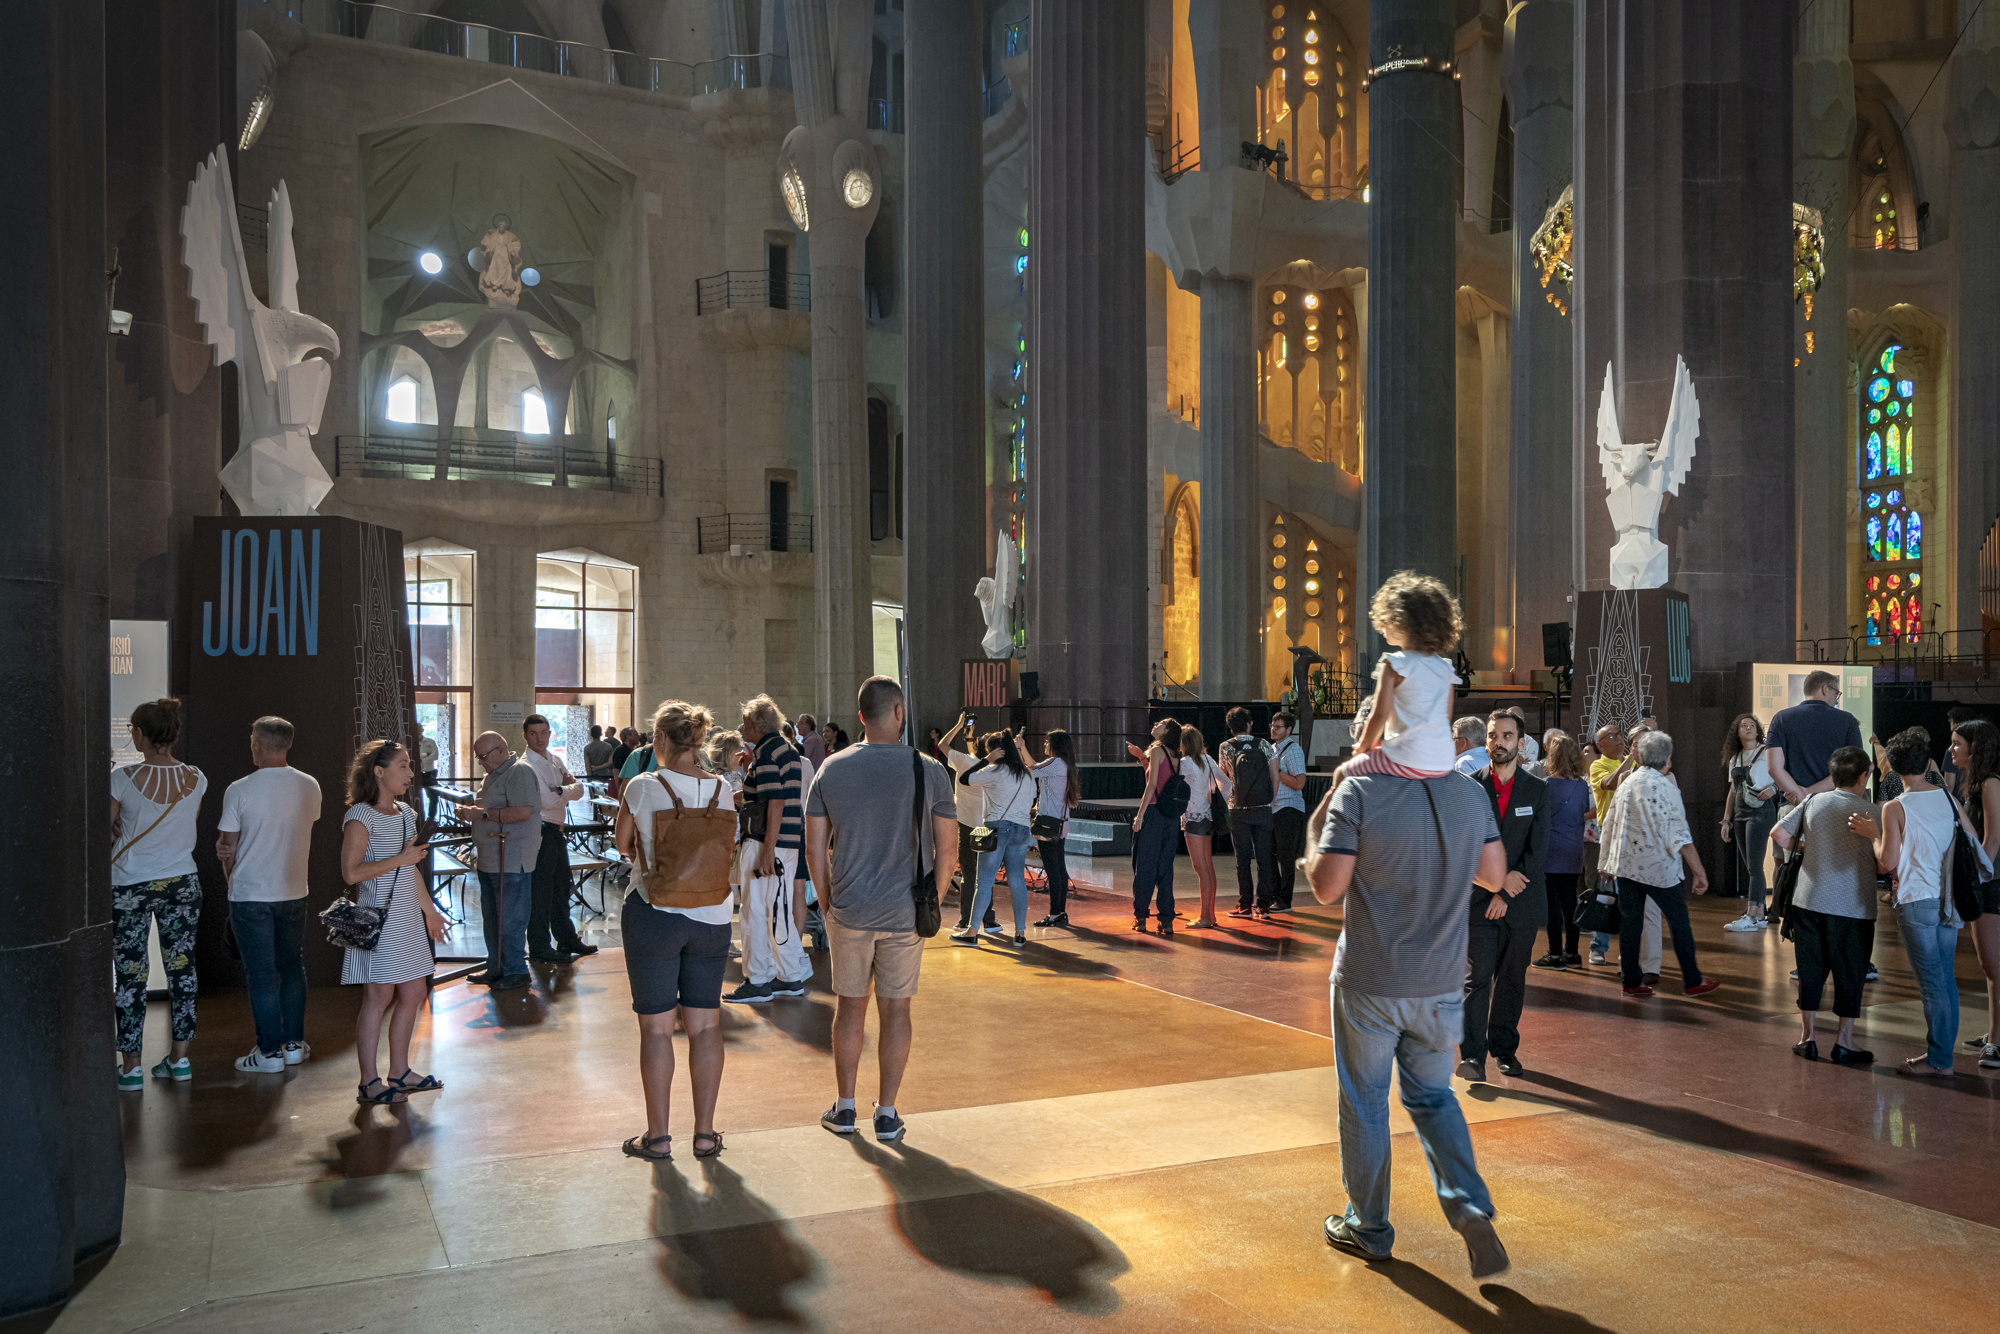 The Sagrada Família has held its Open Doors Days